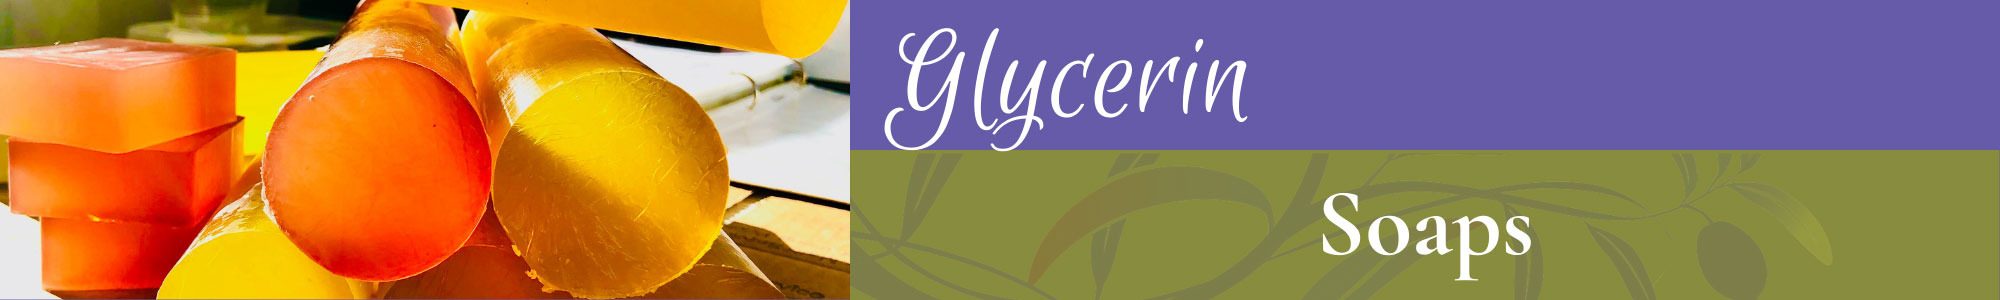 Glycerin Soaps